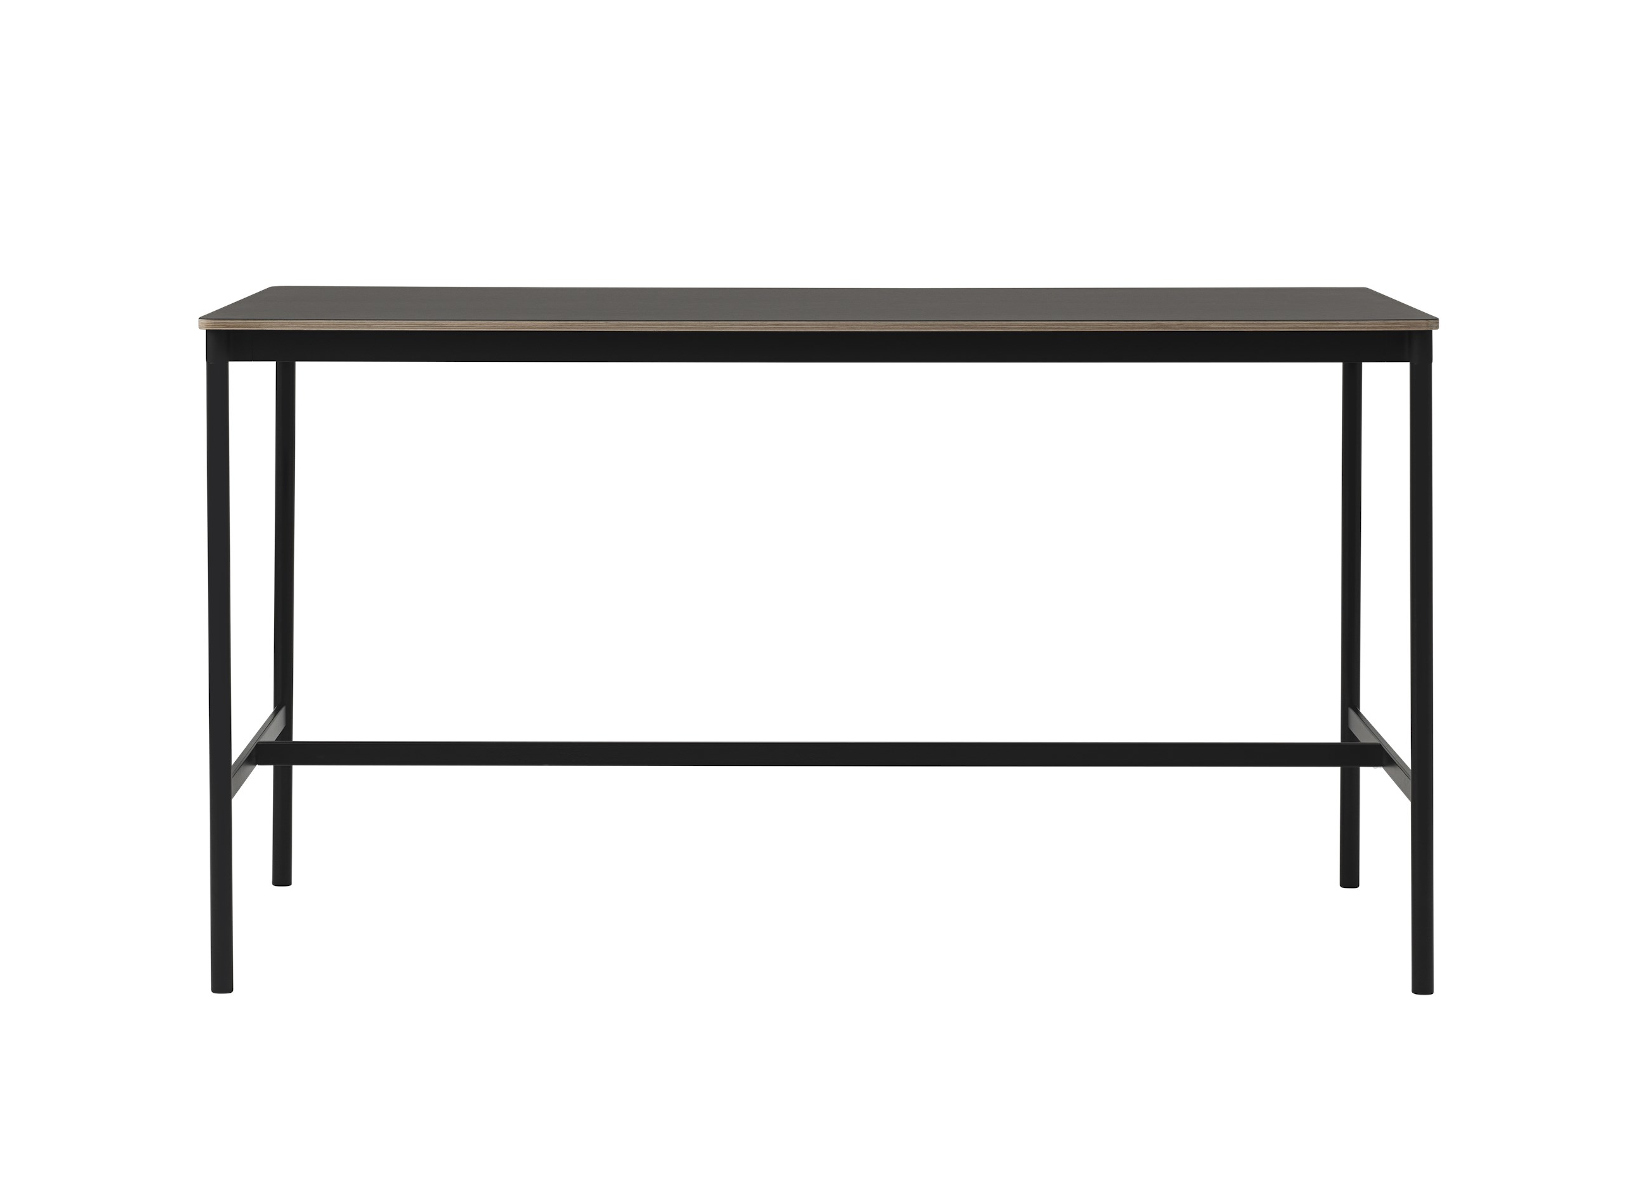 Base Stehtisch, 190 x 85 cm, höhe 105cm, schwarz linoleum / schwarz